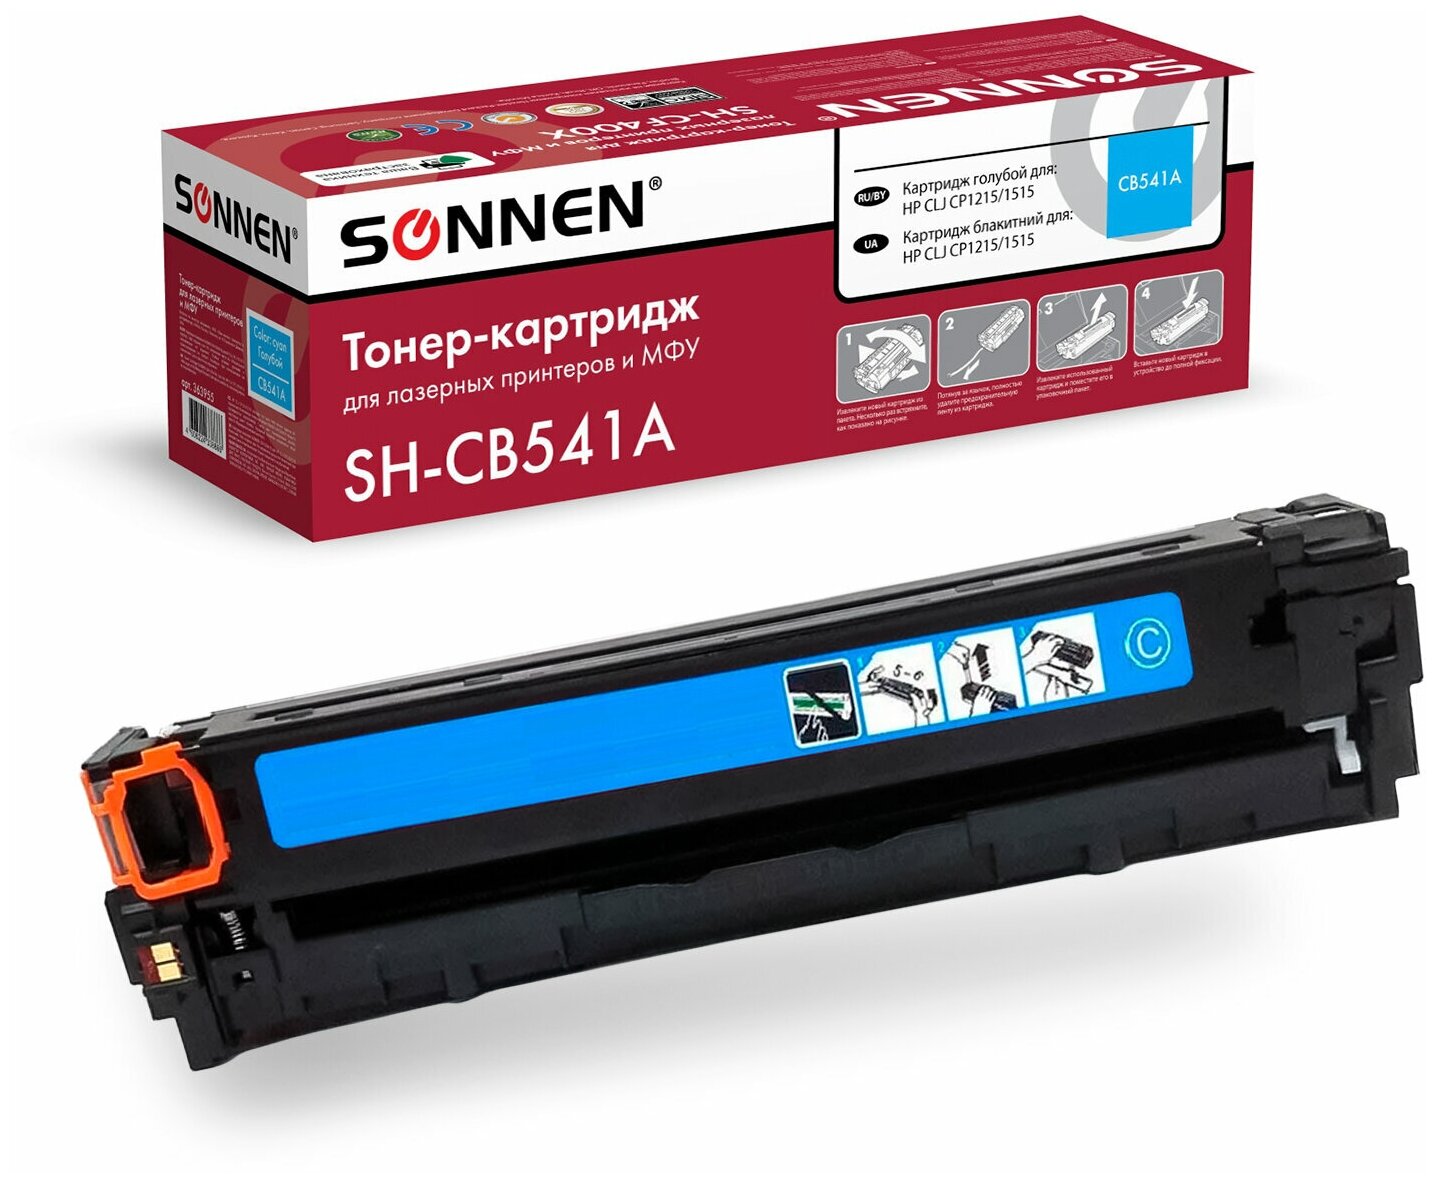 Картридж лазерный Sonnen (SH-CB541A) для HP CLJ CP1215/1515 высшее качество, голубой, 1400 страниц, 363955